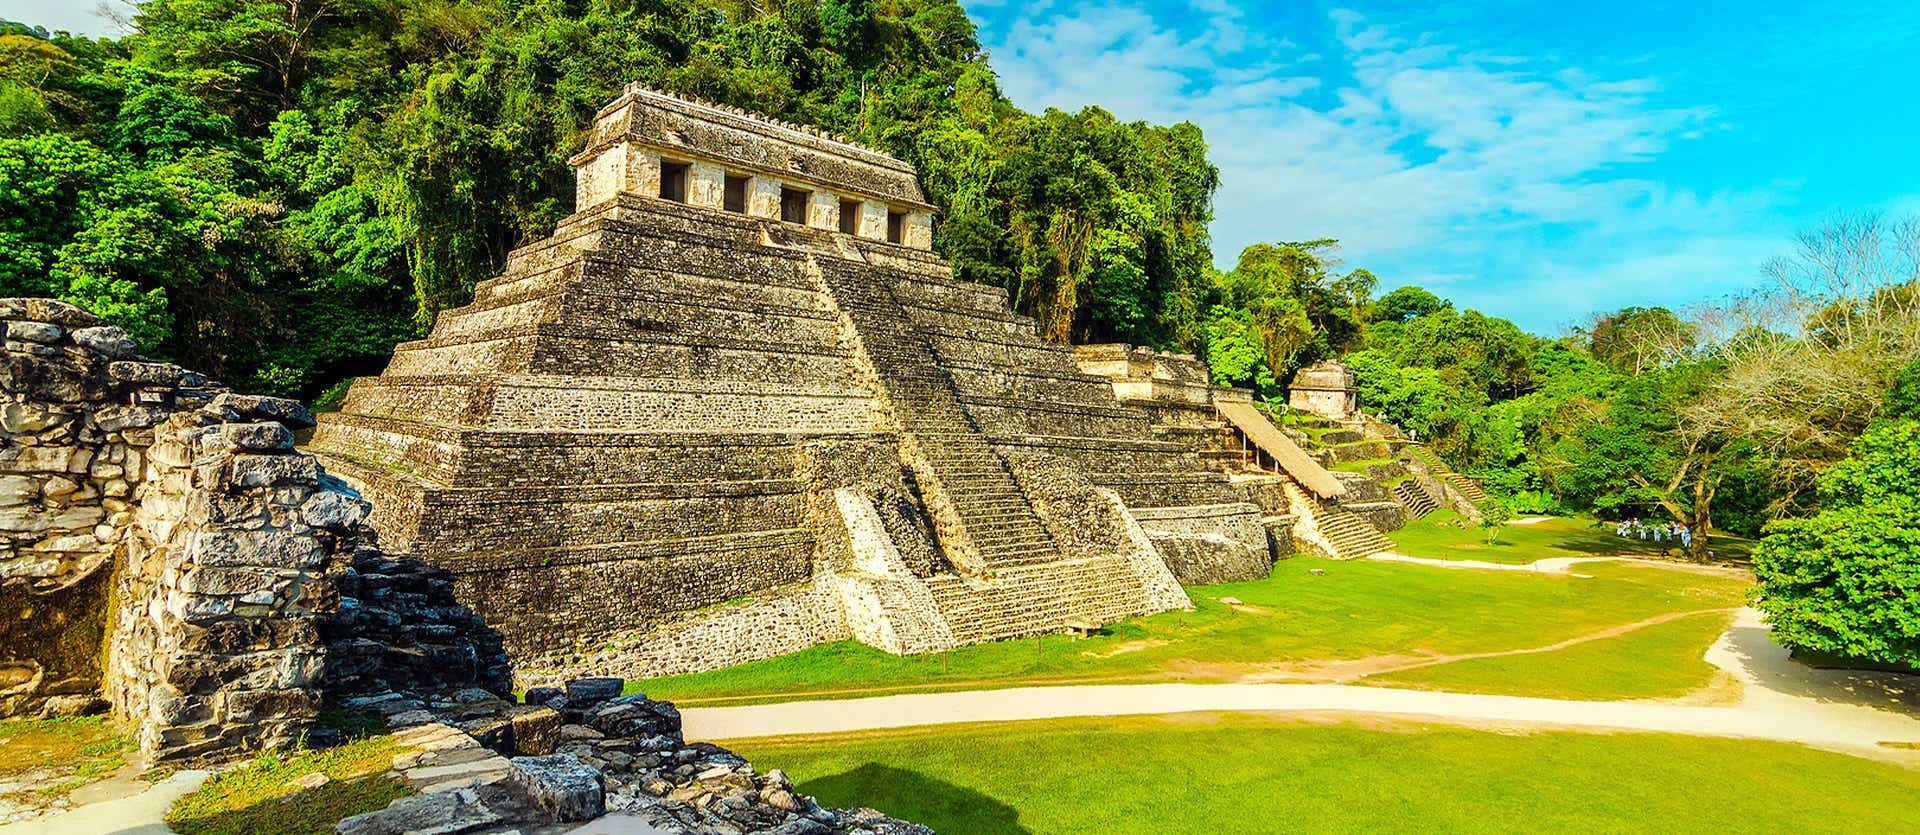 Pyramid Temple <span class="iconos separador"></span> Palenque